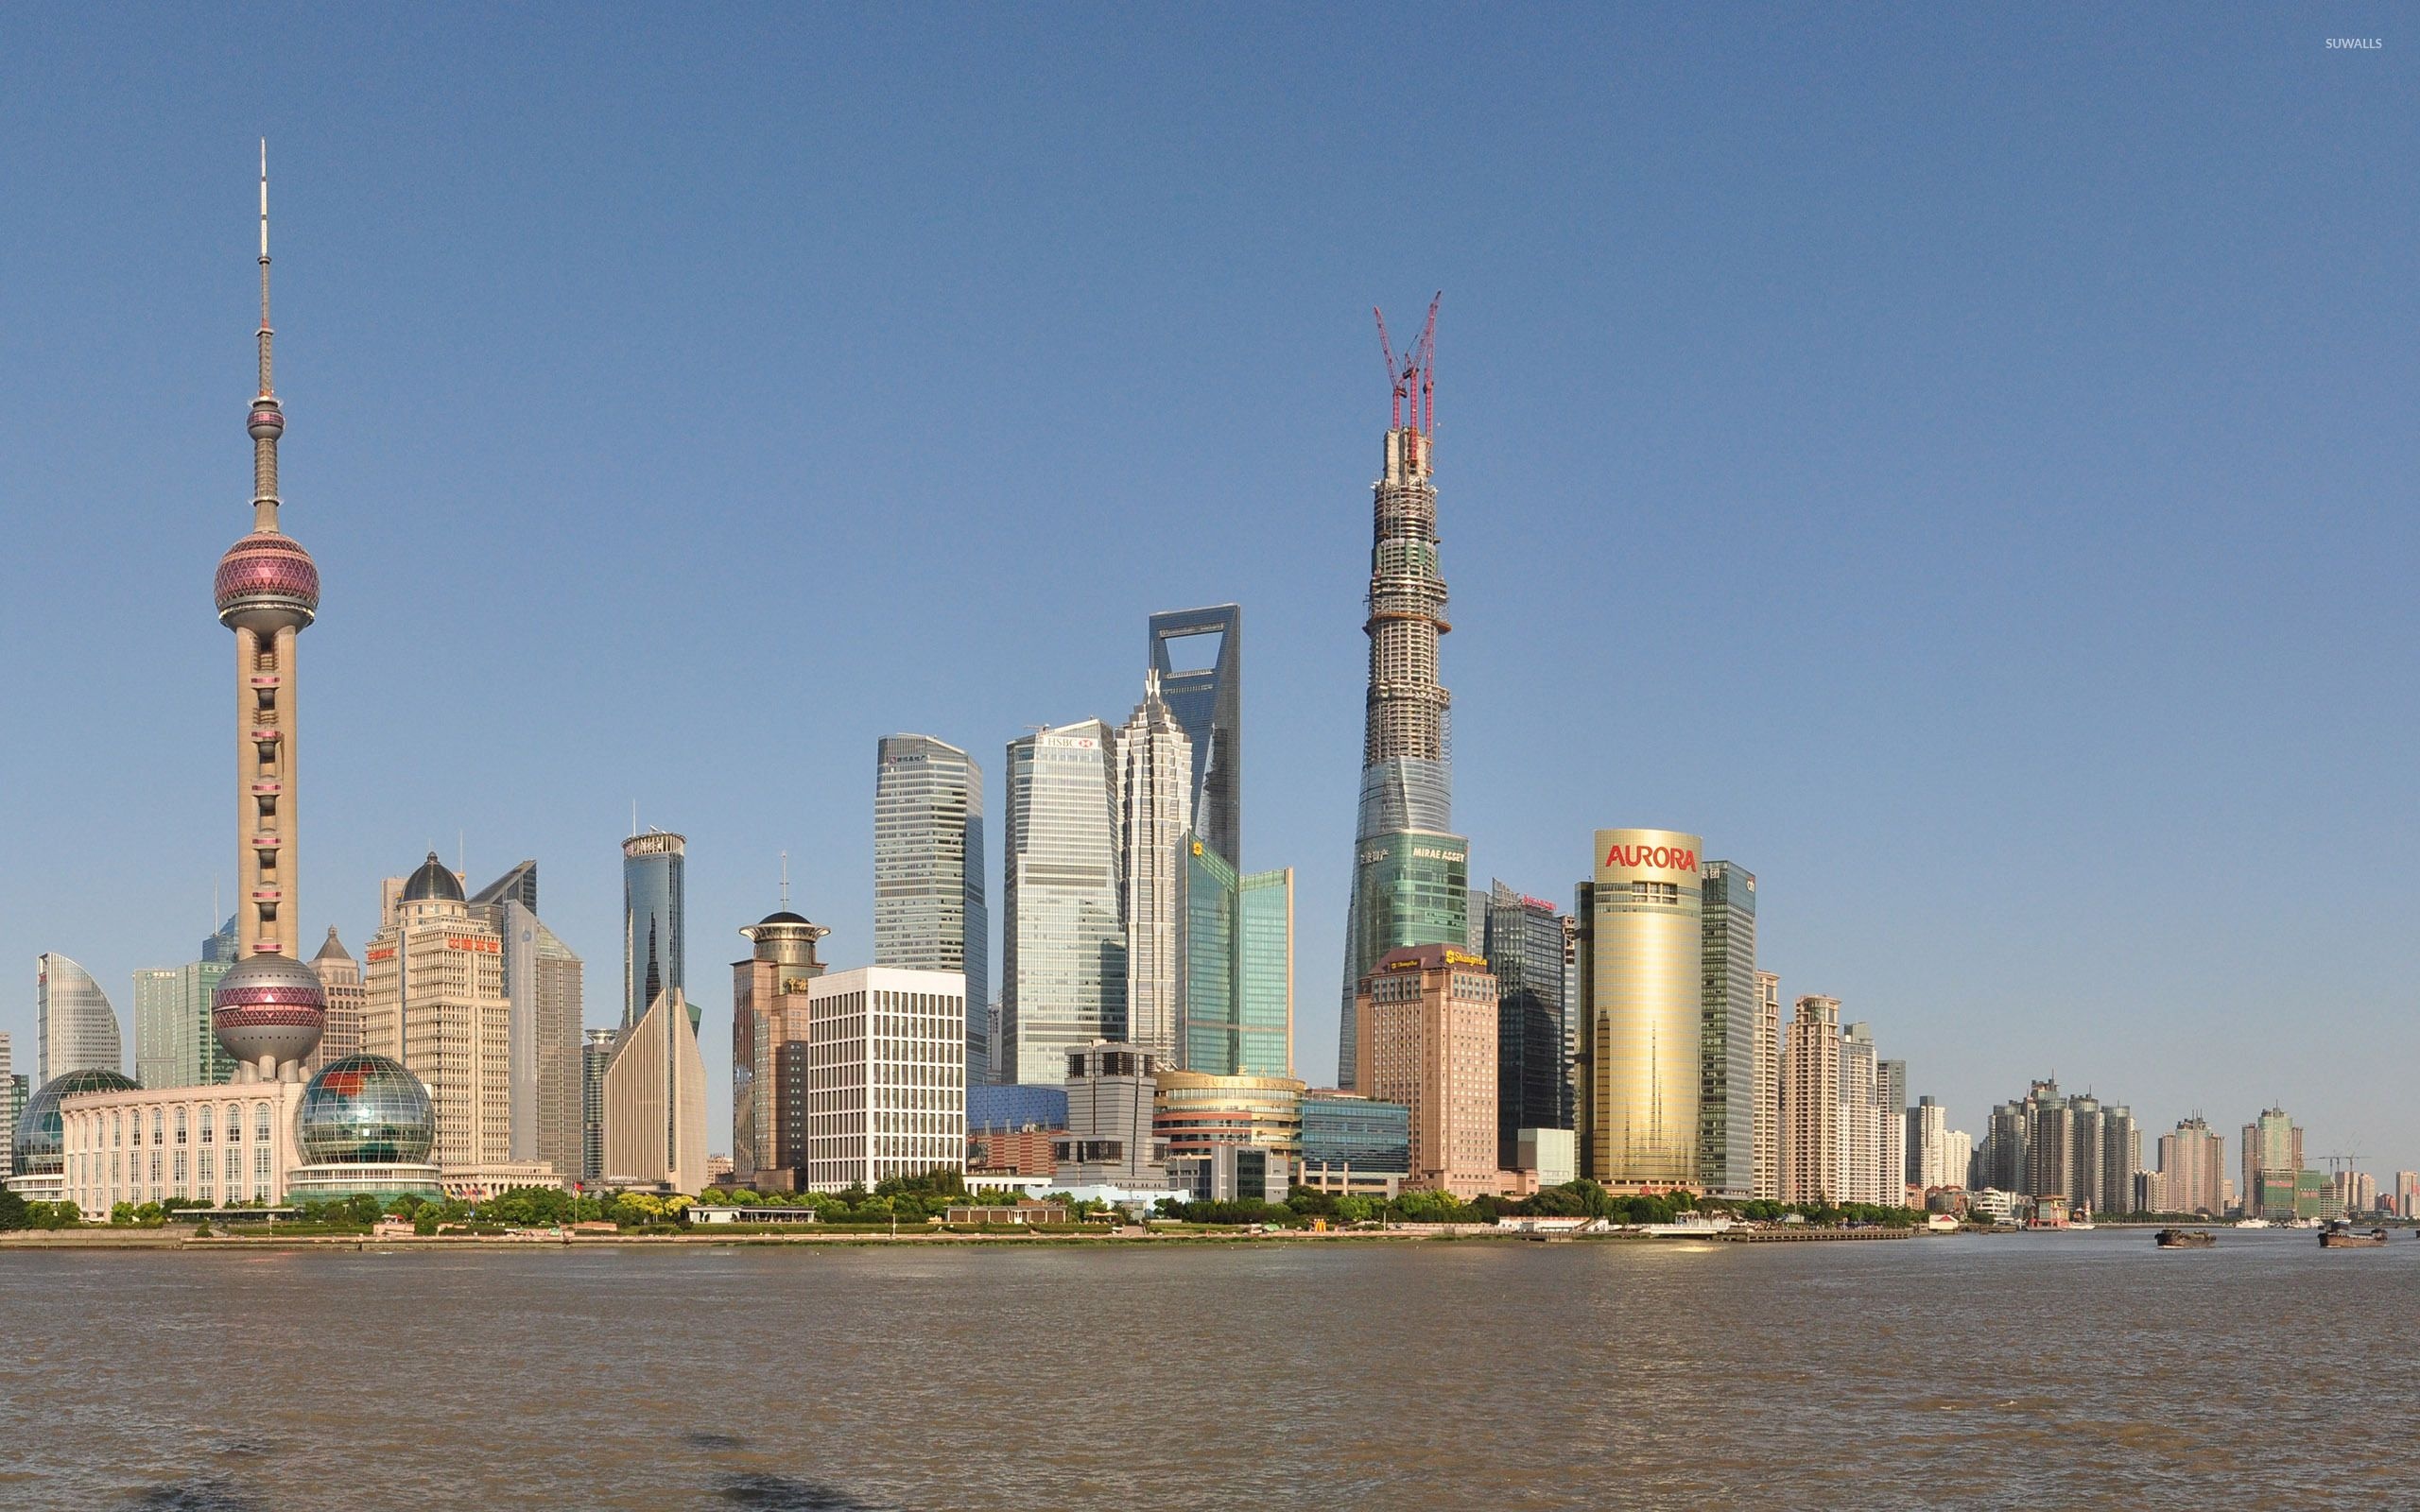 Oriental Pearl Tower, Shanghai Tower, Architectural wonders, Modern skyscrapers, 2560x1600 HD Desktop